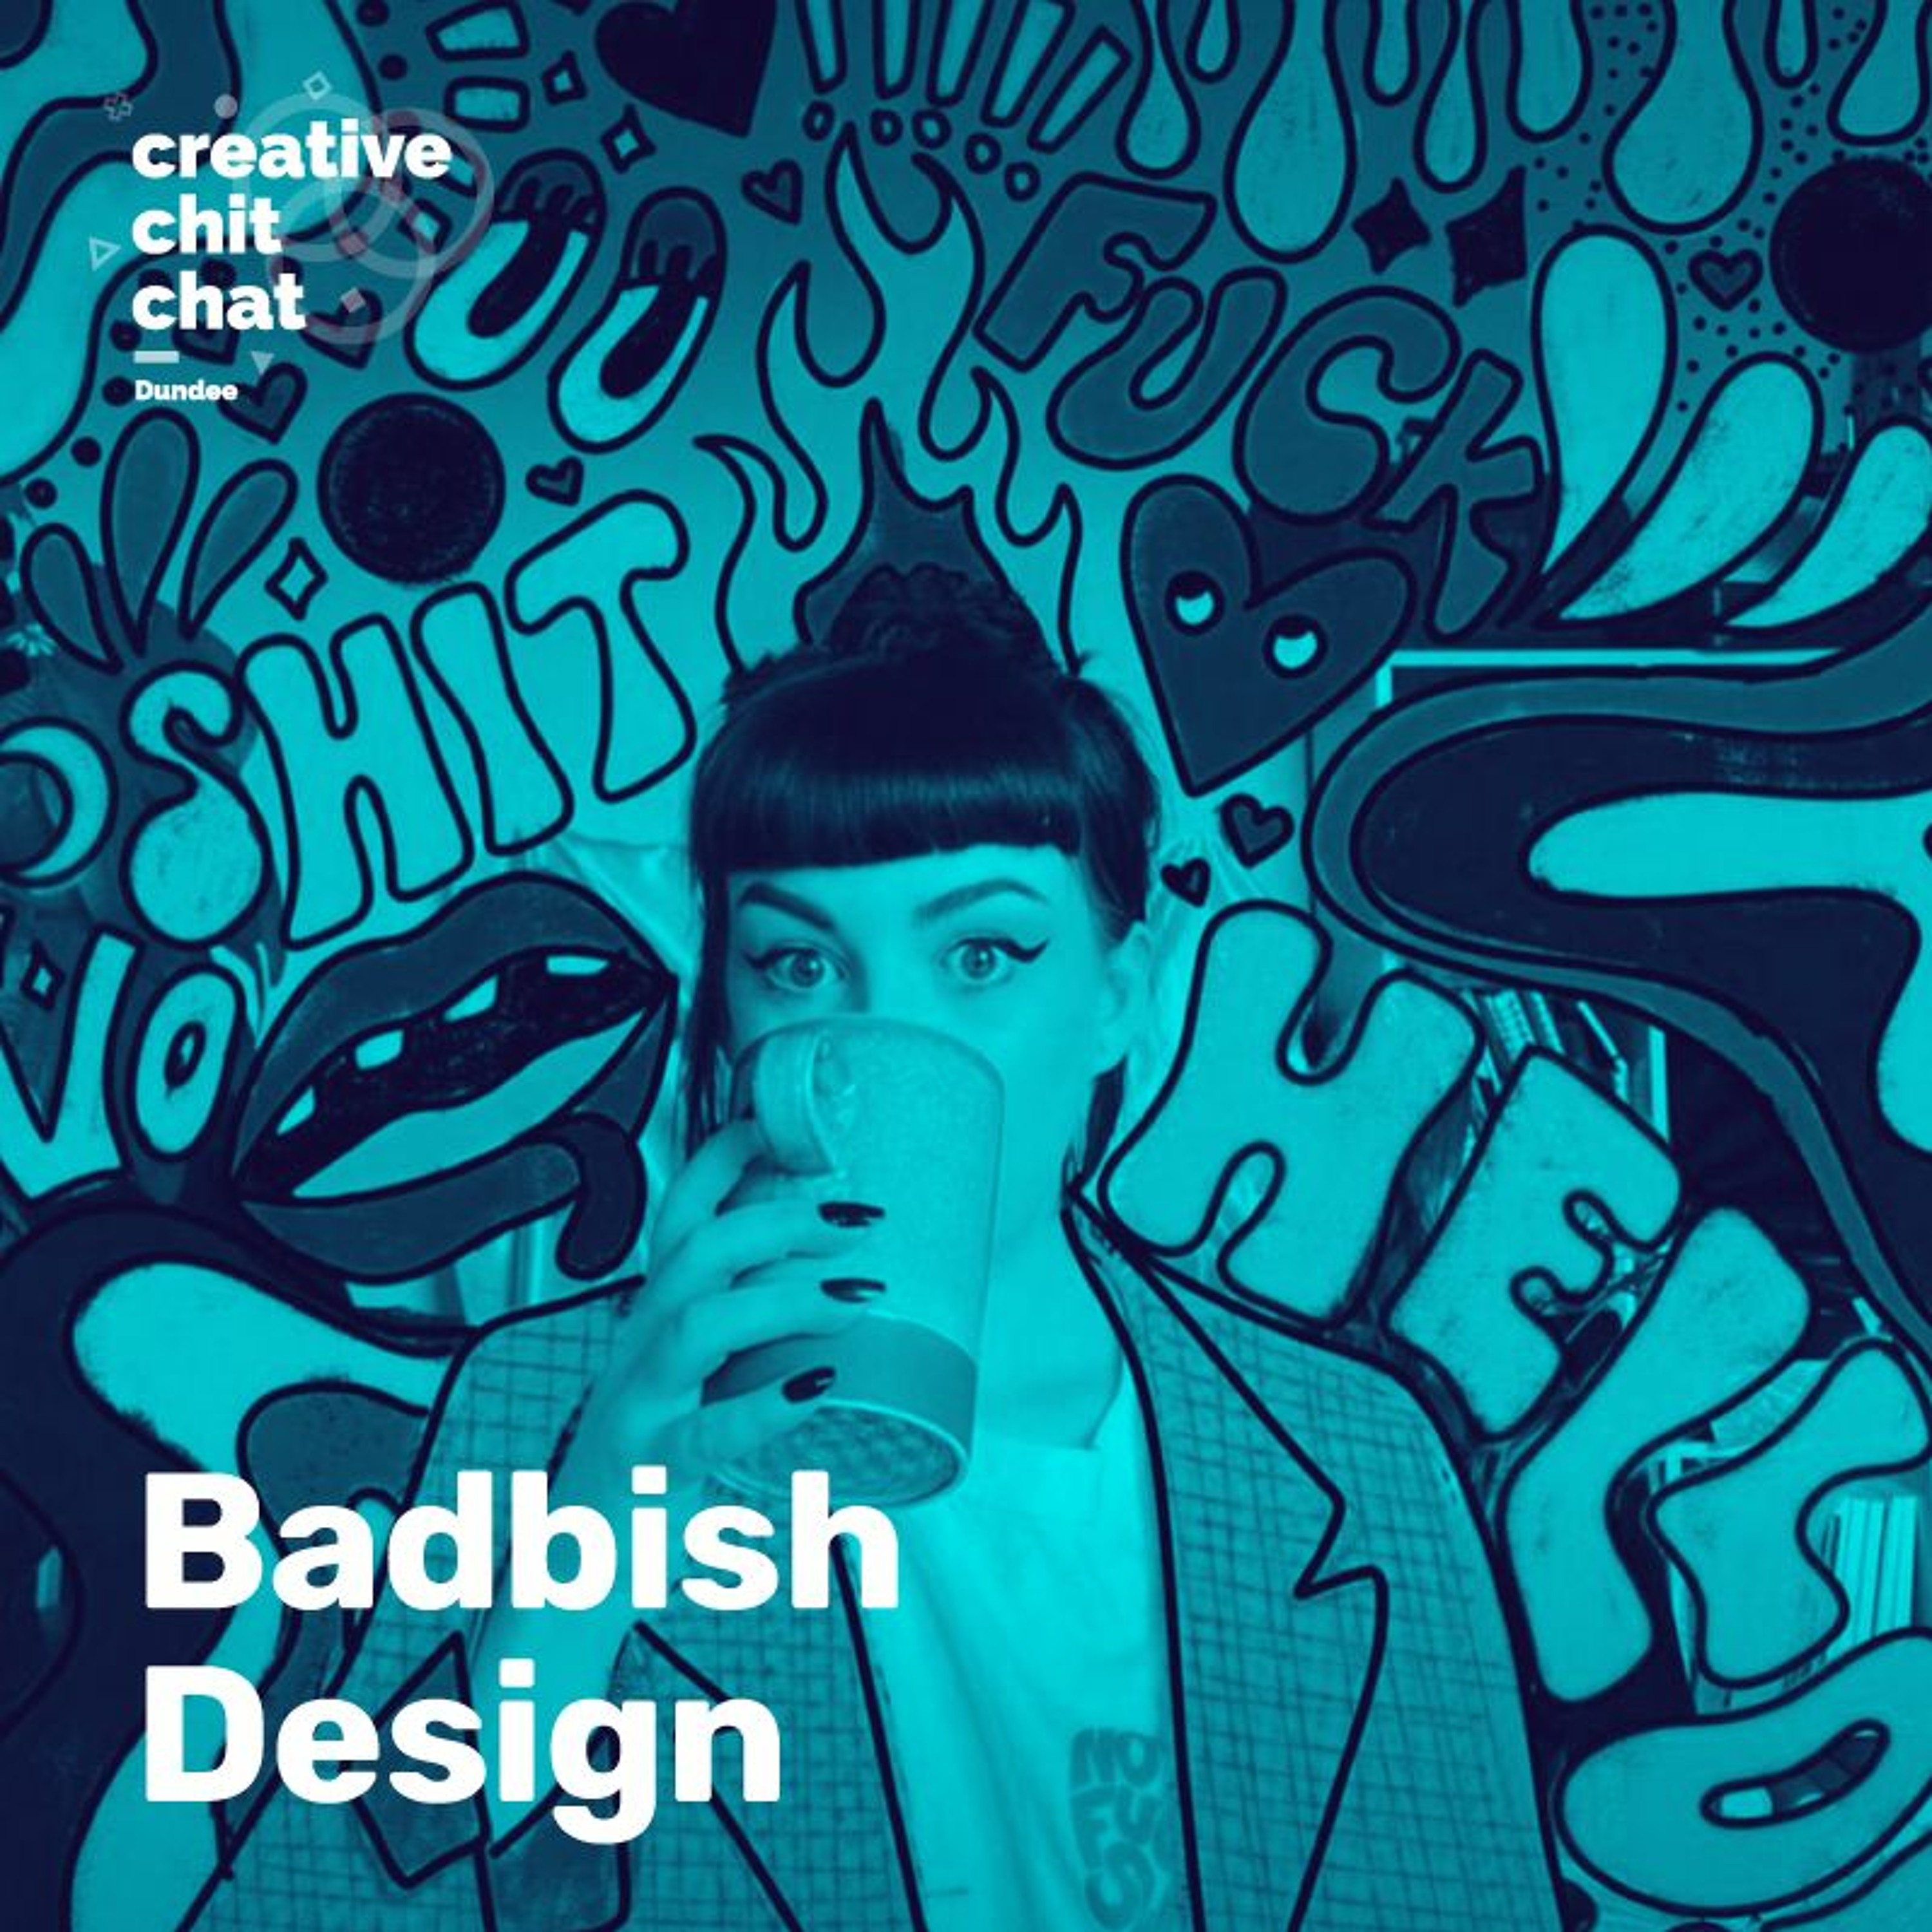 Badbish Design- Confronting privilege & elitism in design